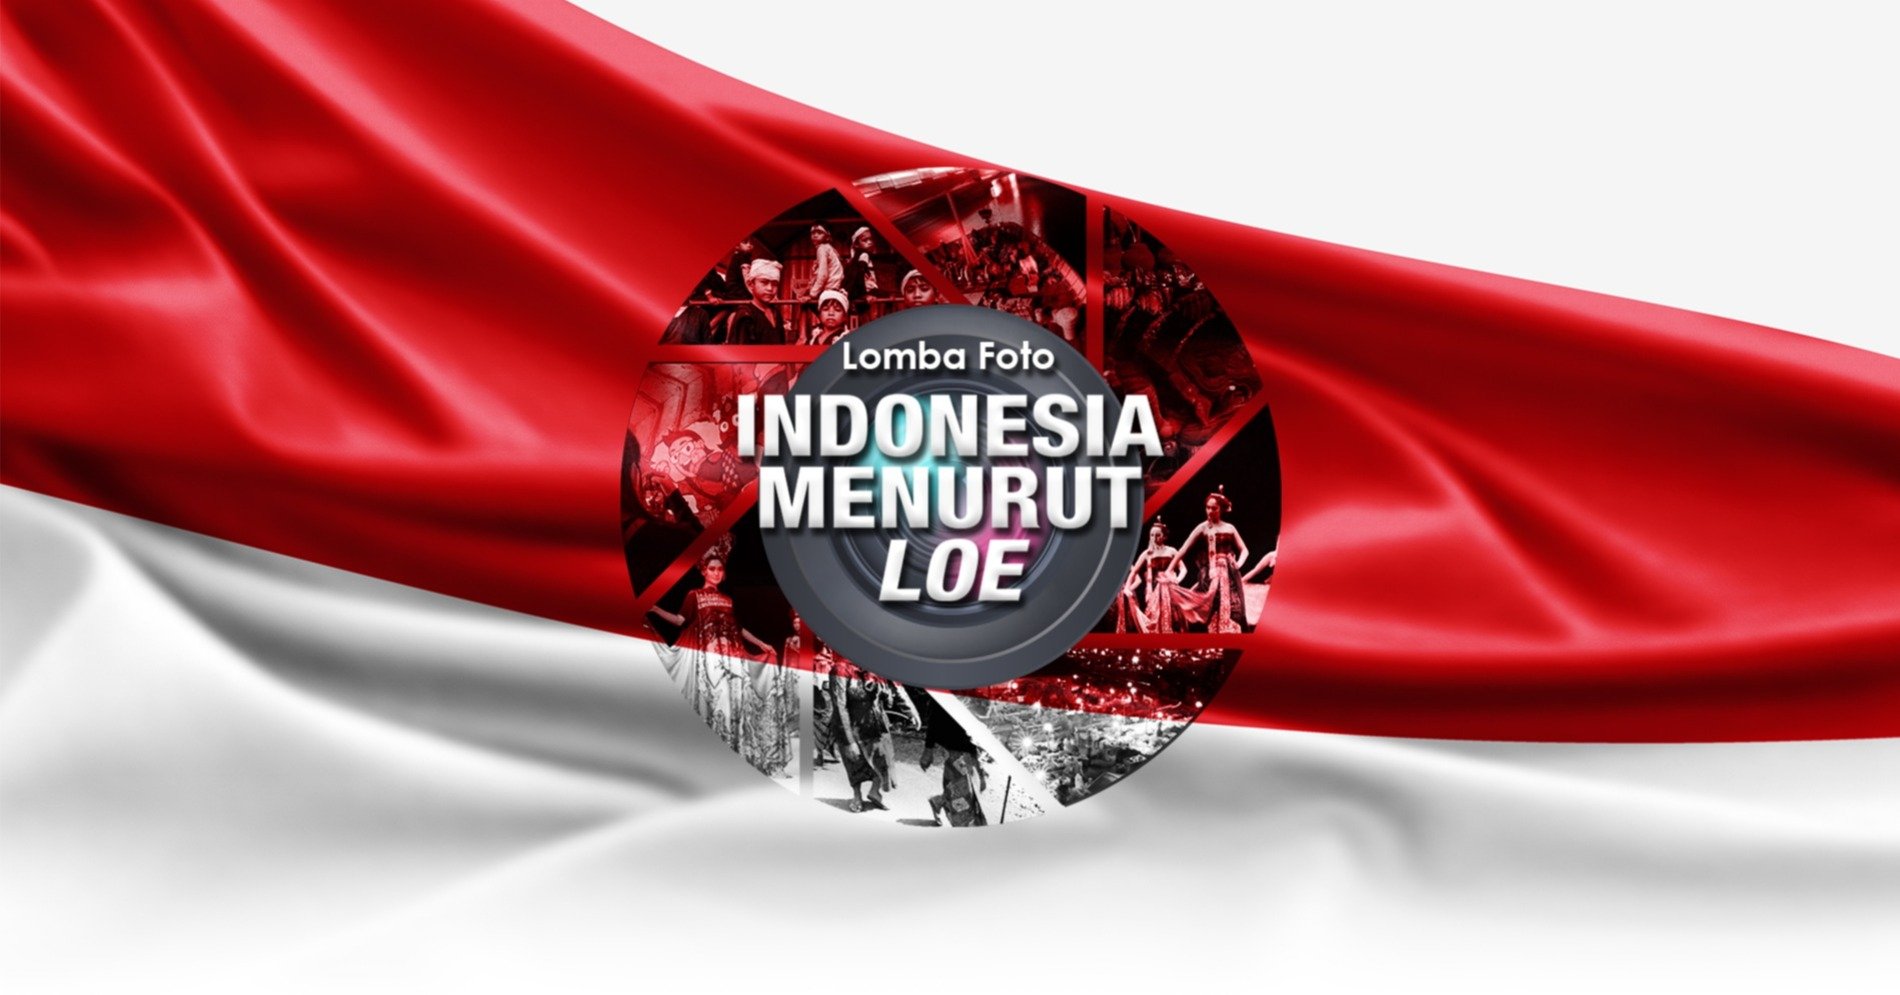 INDONESIA MENURUT LOE